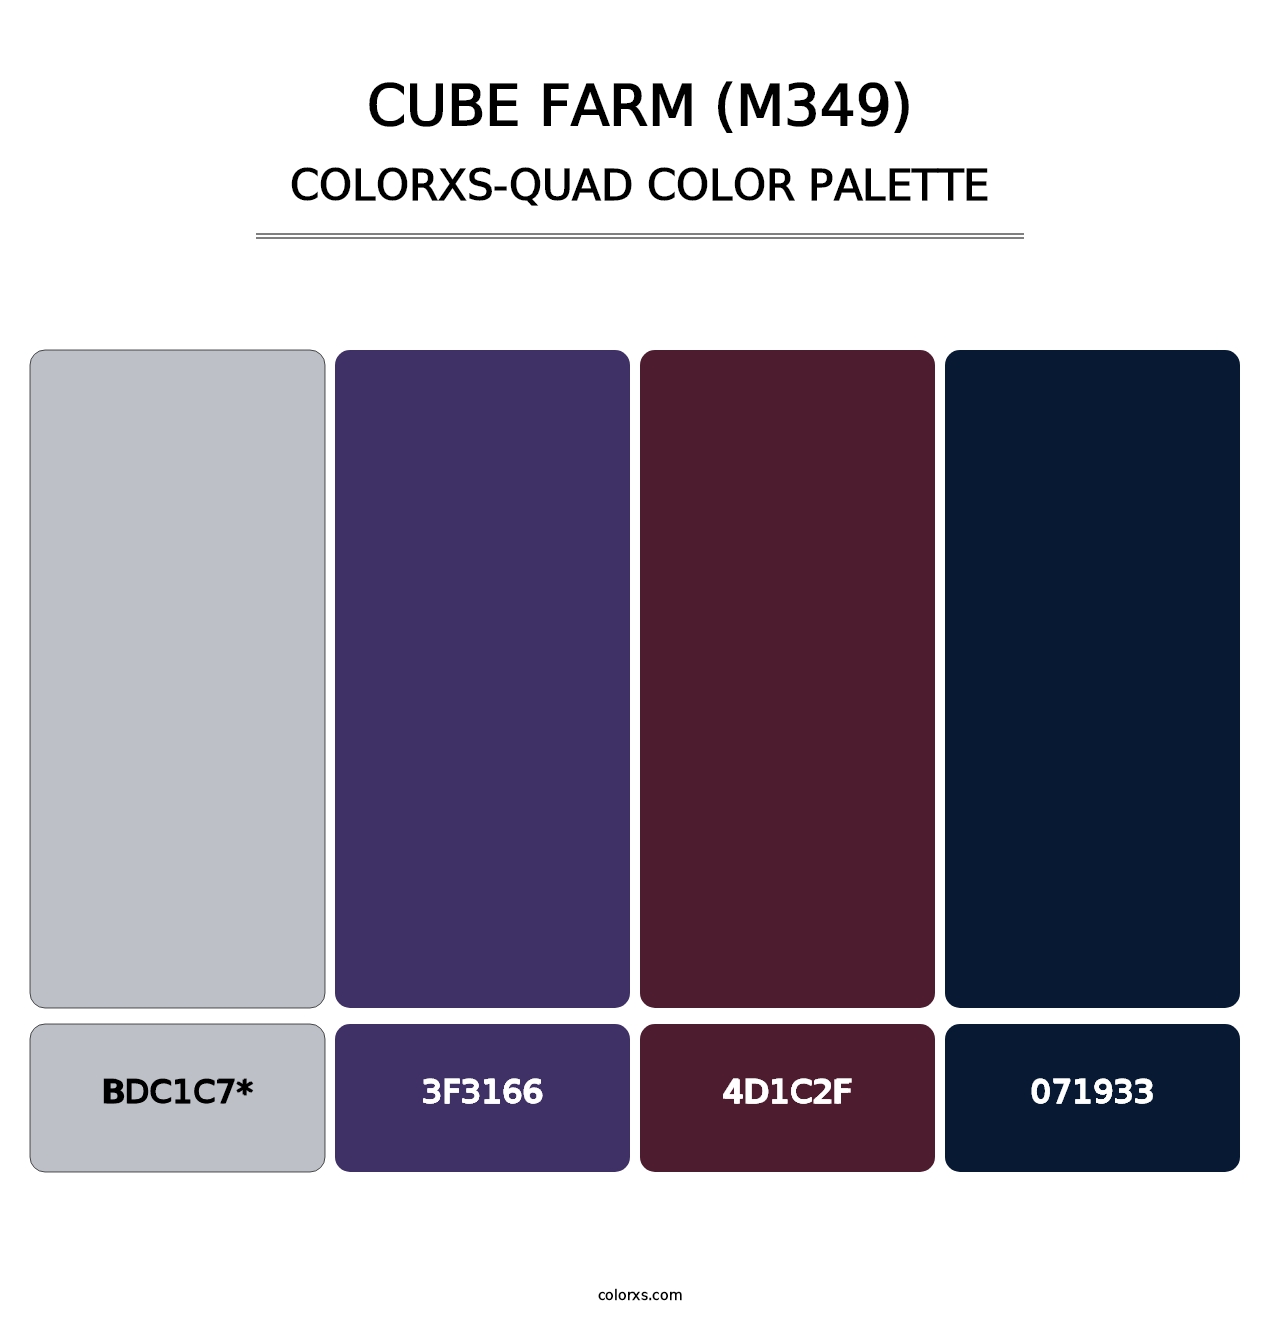 Cube Farm (M349) - Colorxs Quad Palette